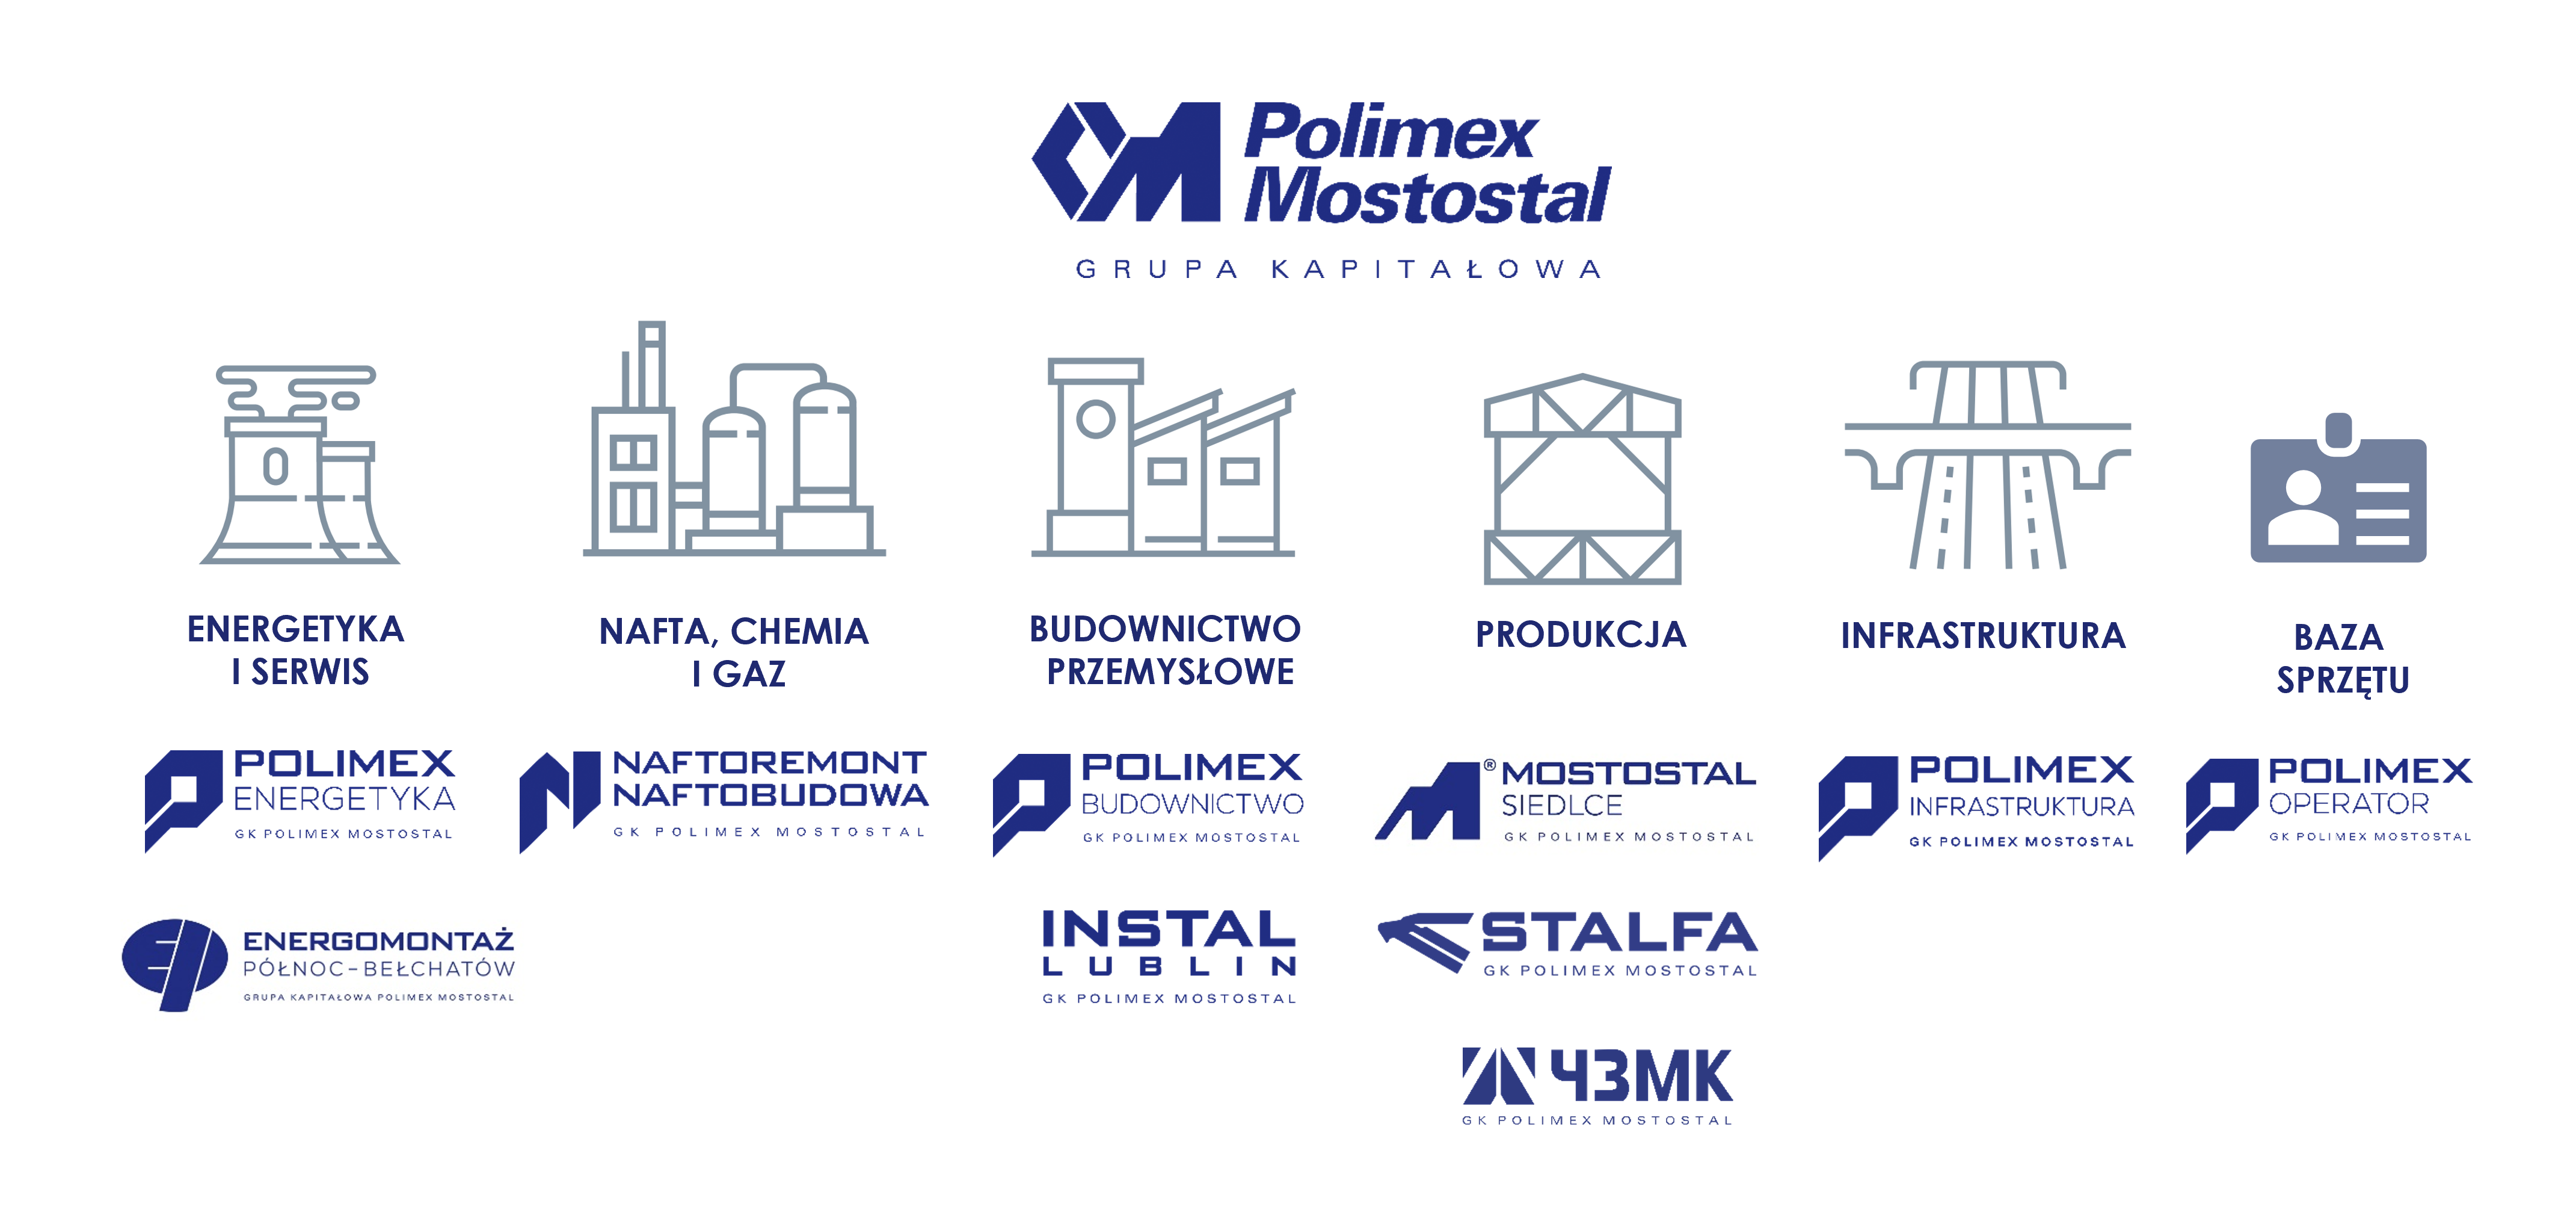 Struktura Grupy Kapitałowej Polimex Mostostal